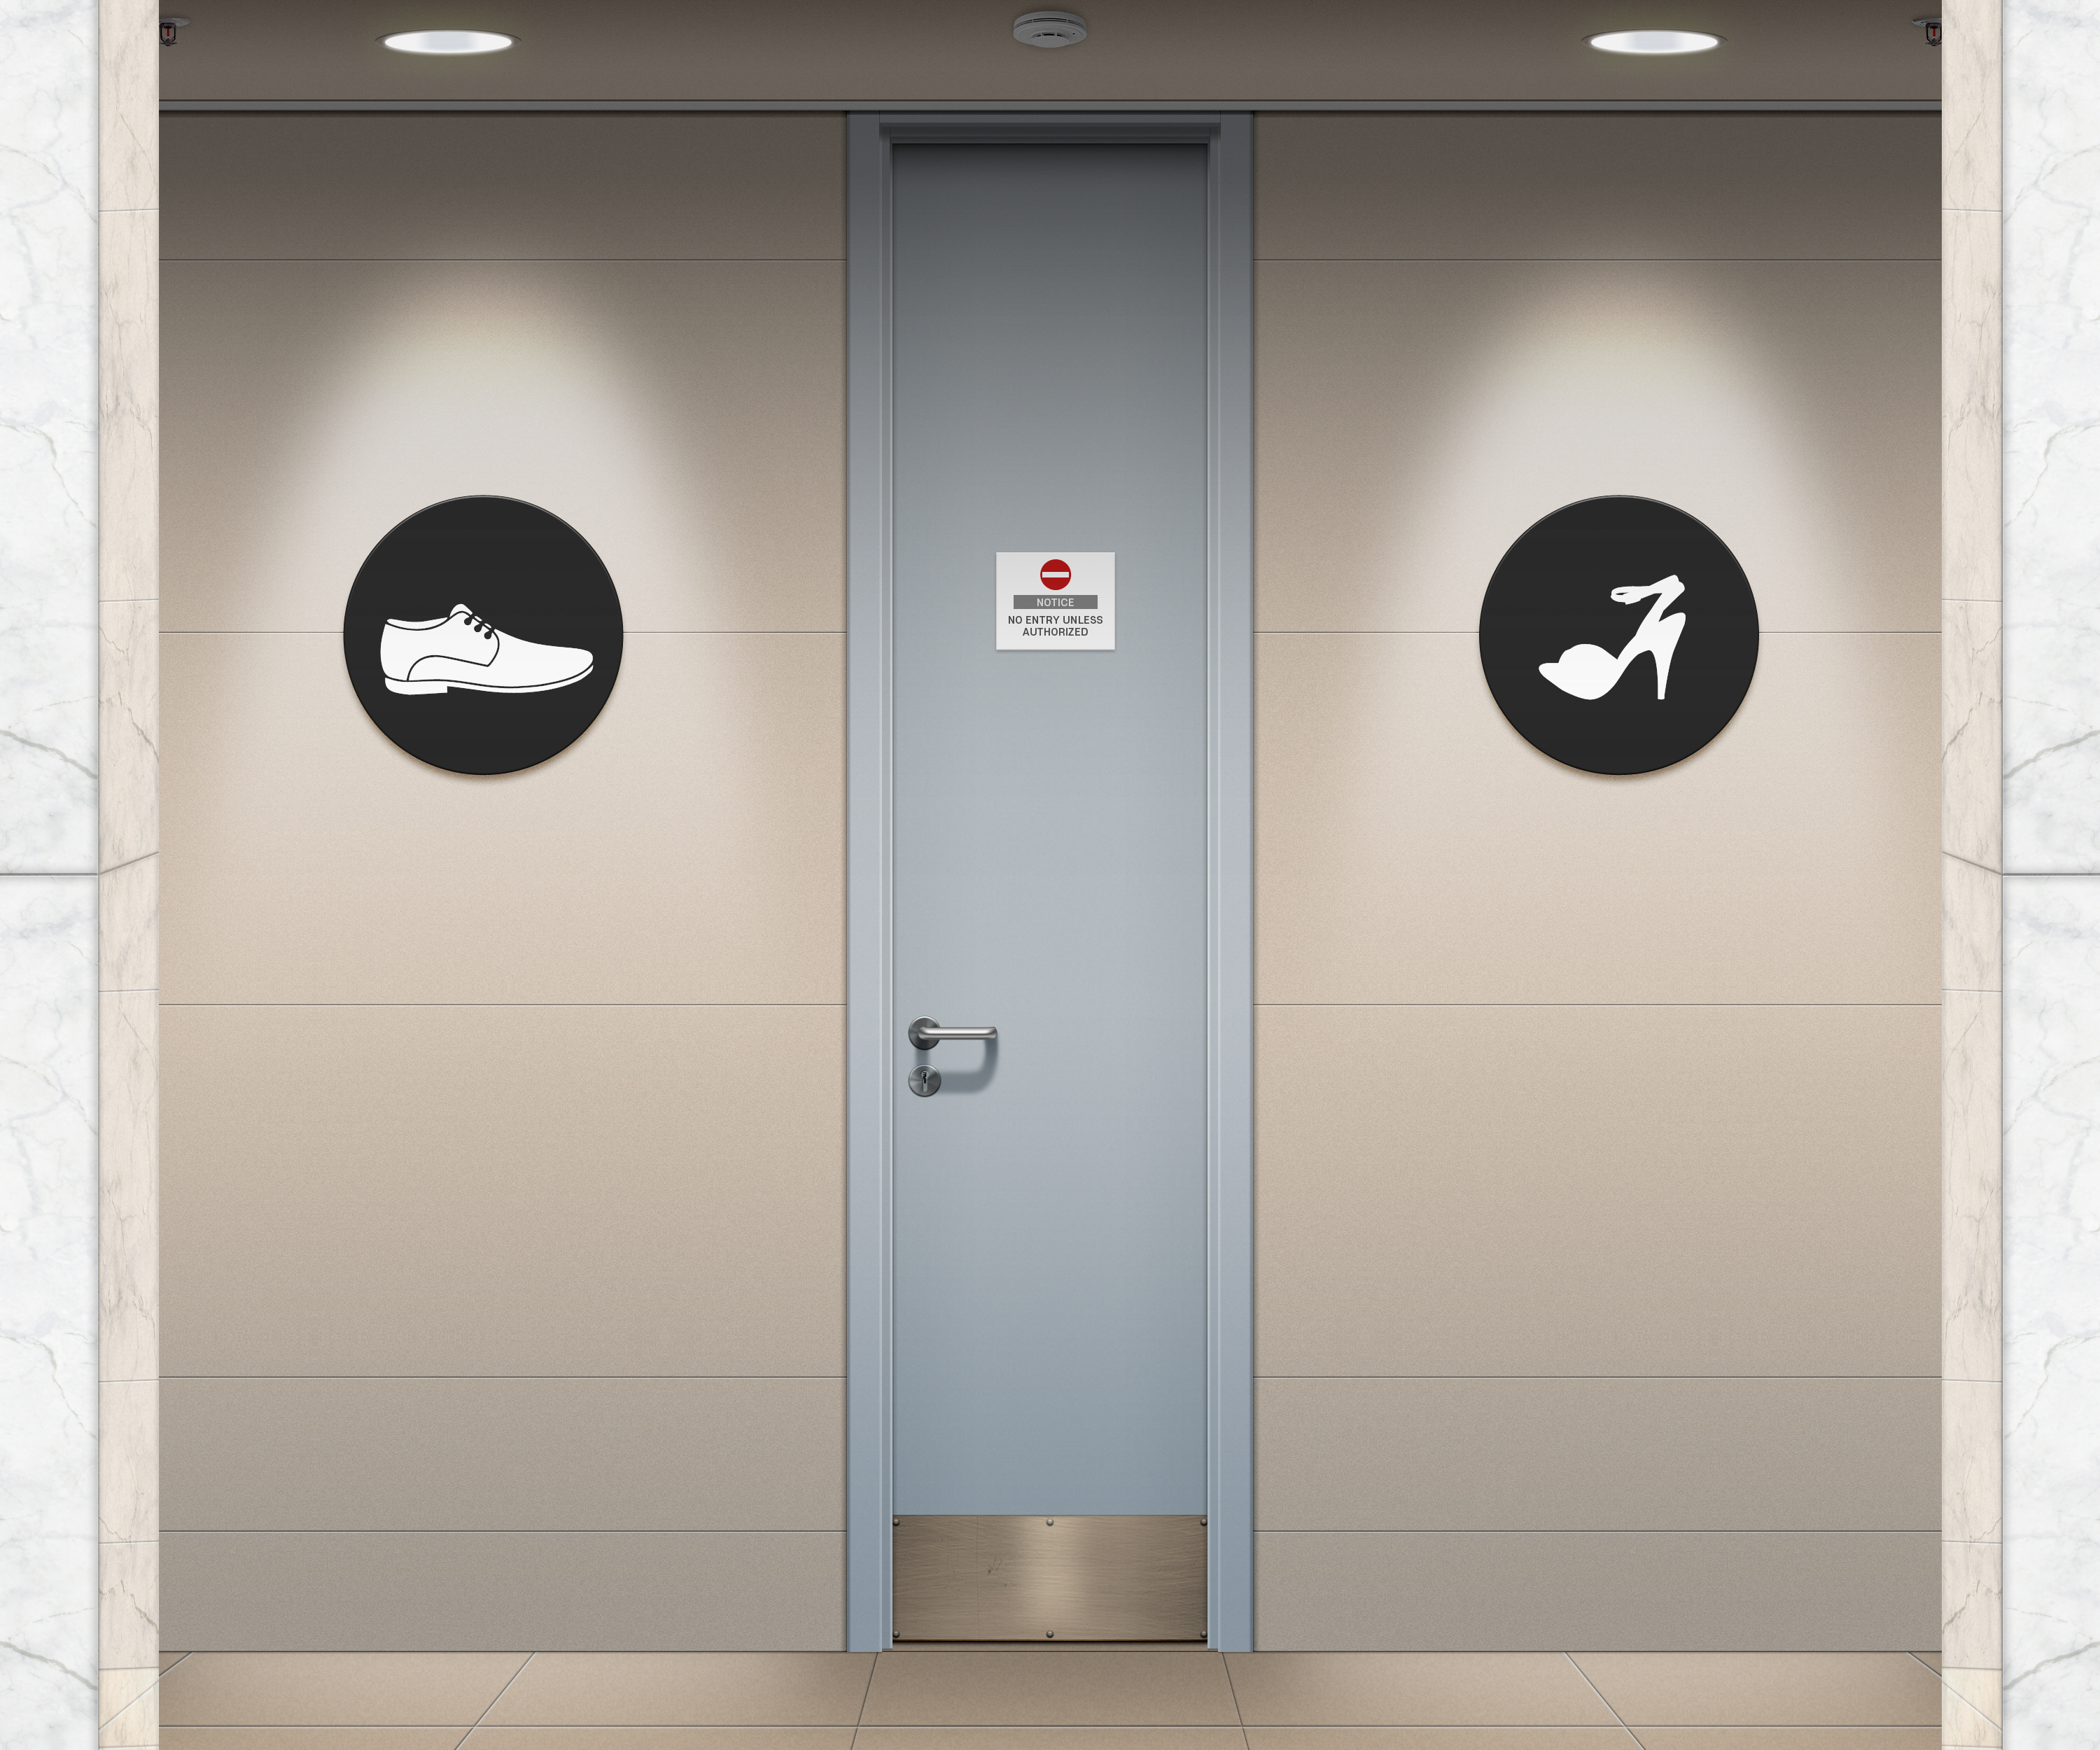 General 3000x2500 toilets public restroom signs digital art vector CGI